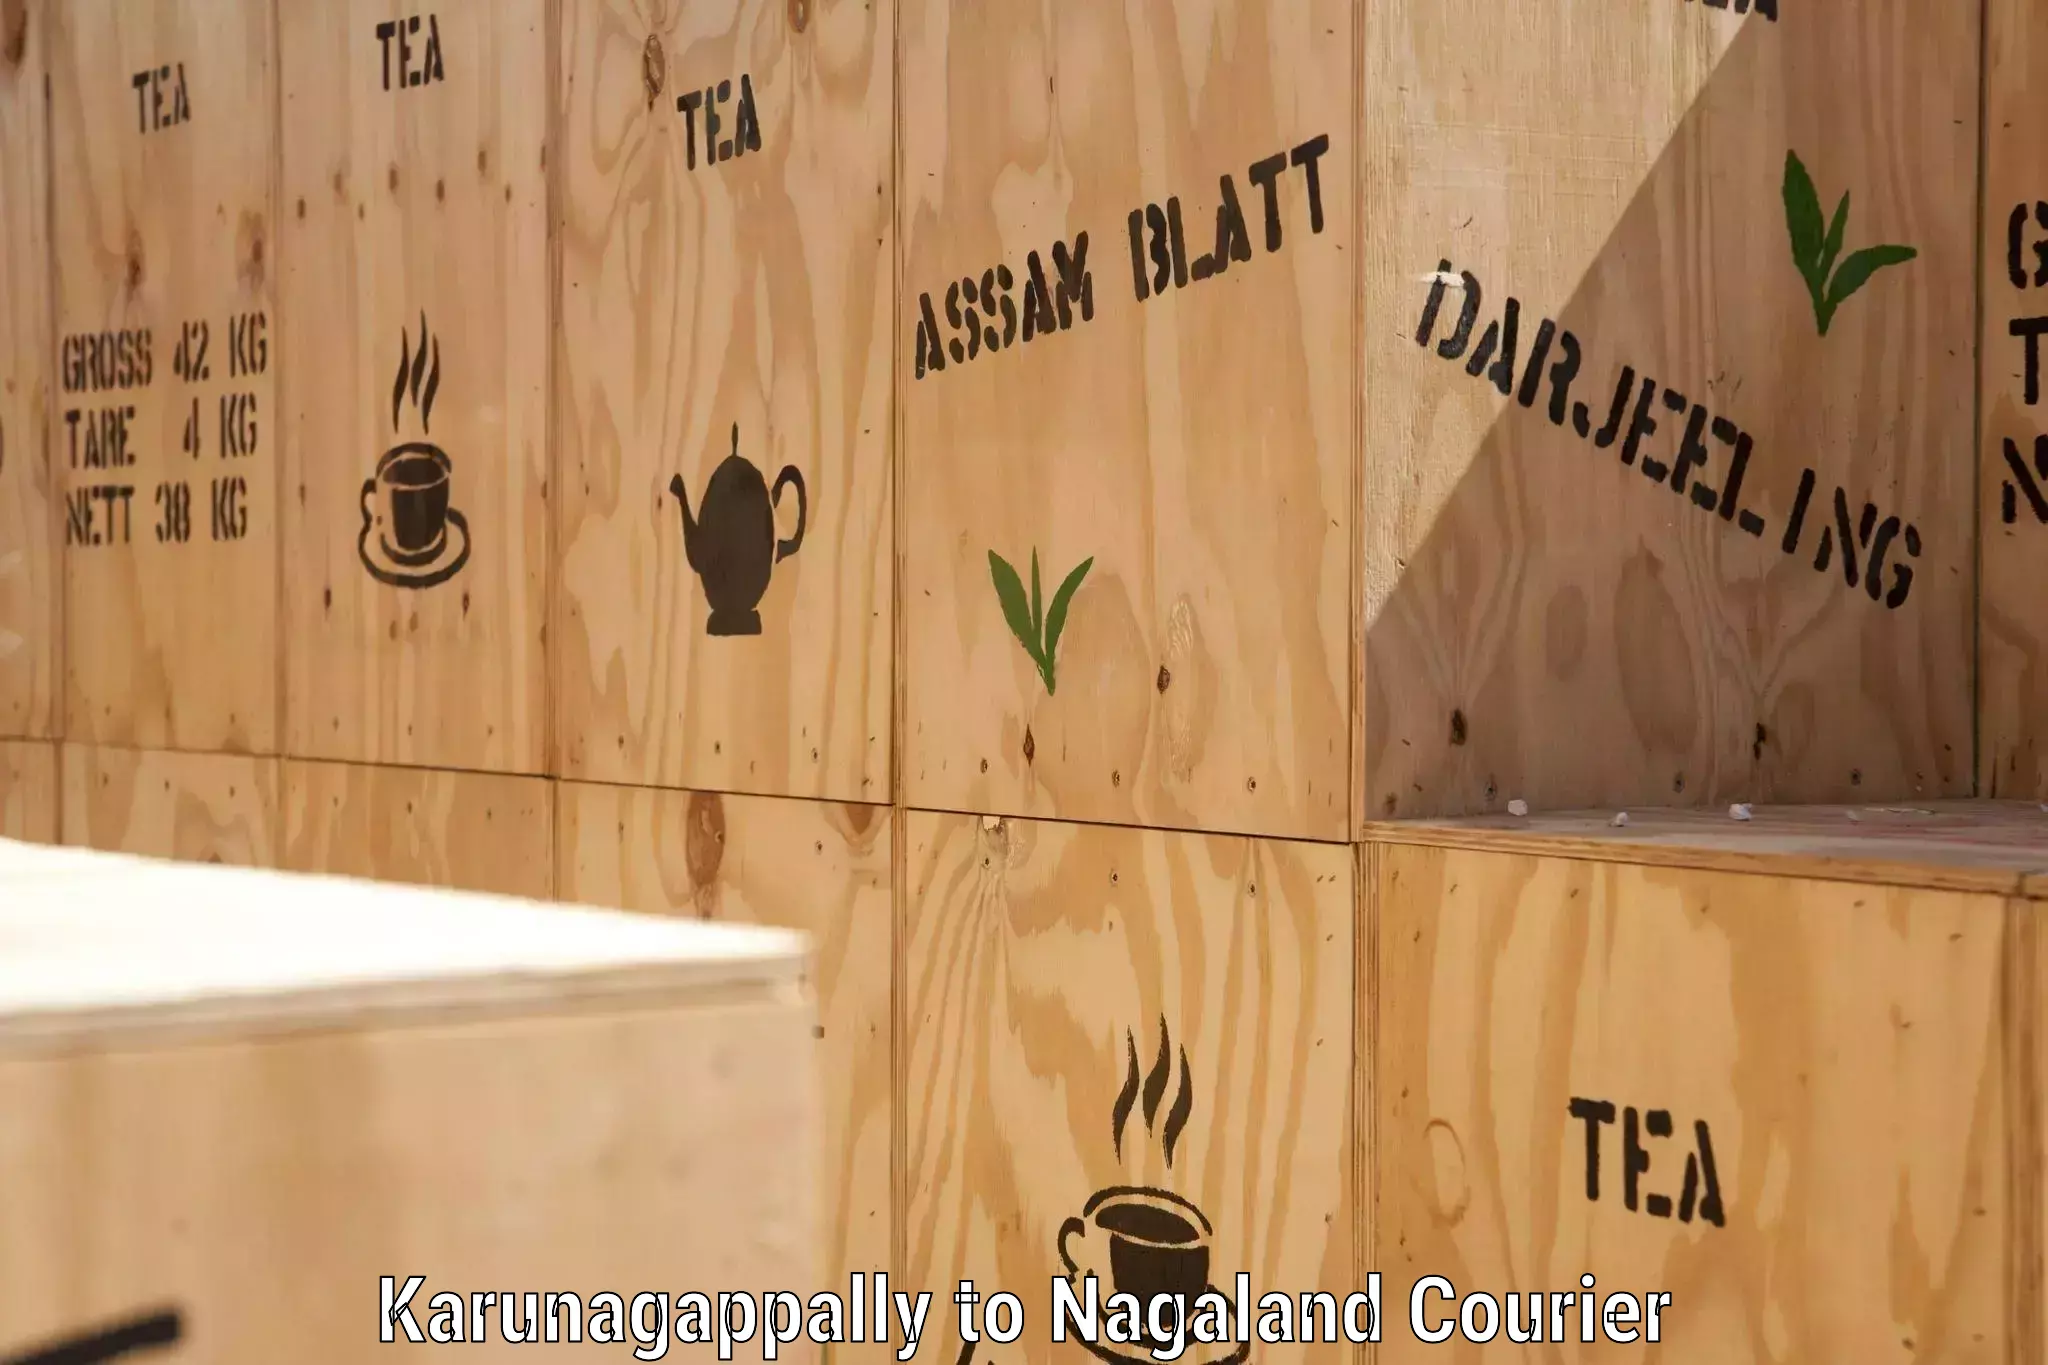 Efficient order fulfillment Karunagappally to Nagaland